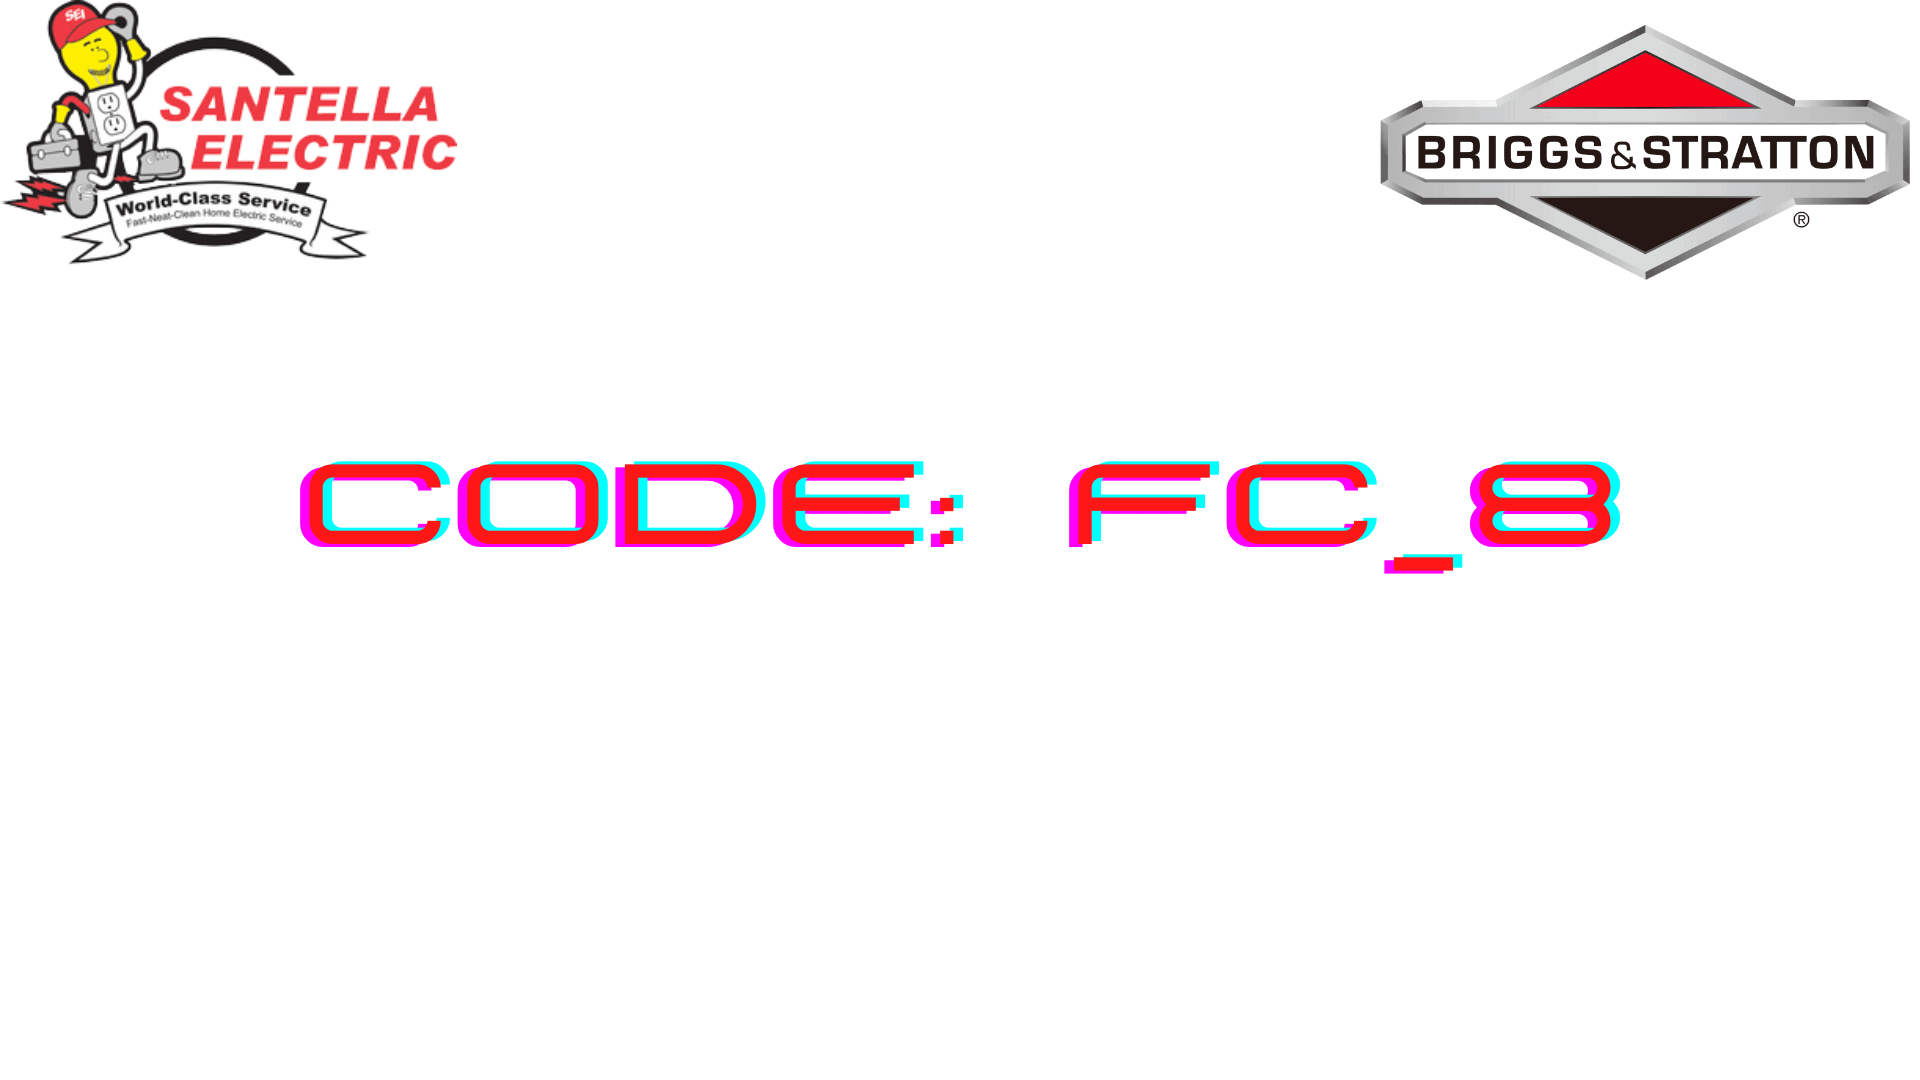 Briggs and Stratton Error Code - Code FC_8